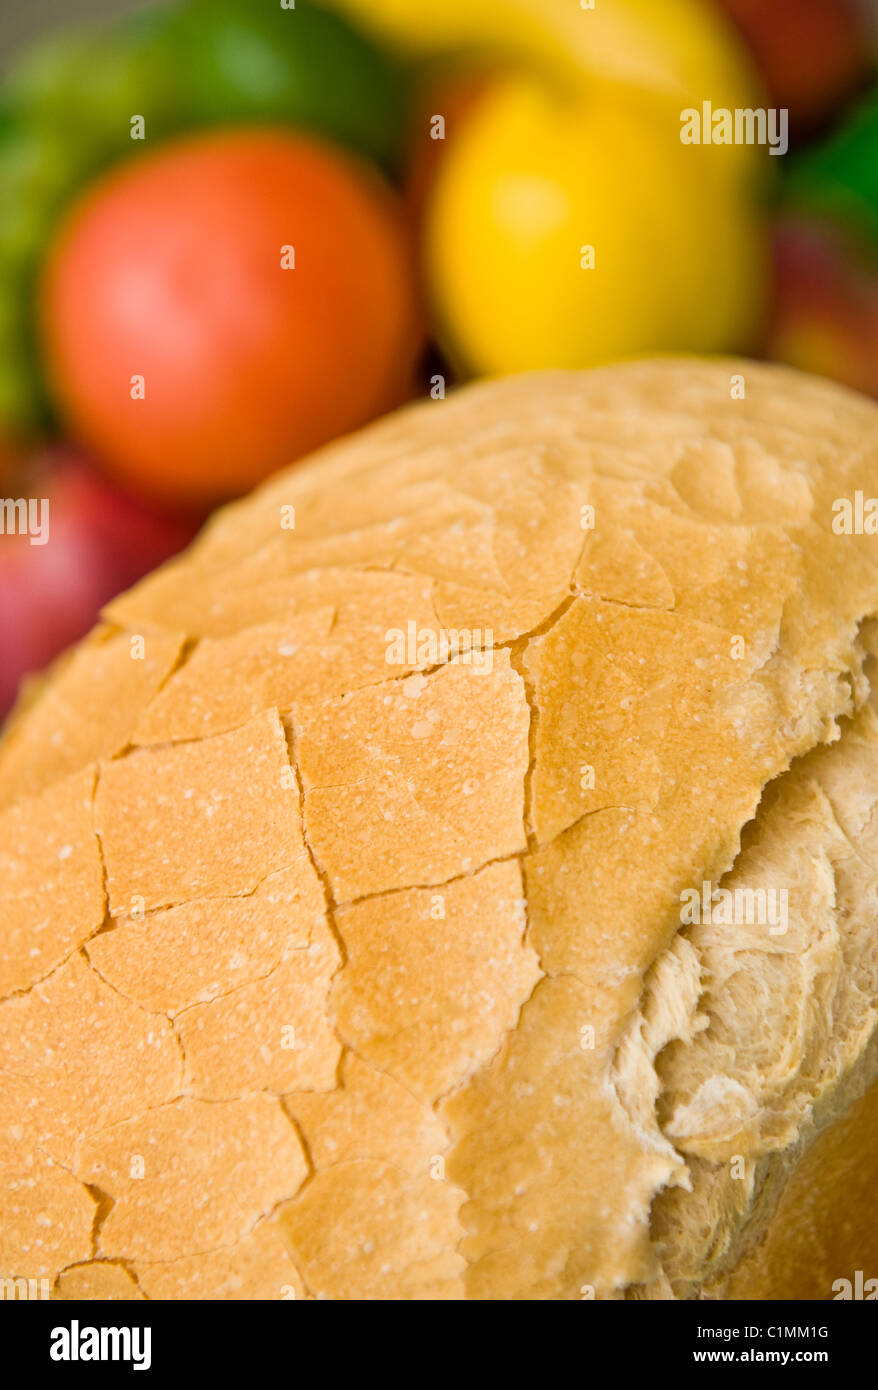 Un pain frais cuit de pain français maison organique, pris dans une machine à pain Banque D'Images